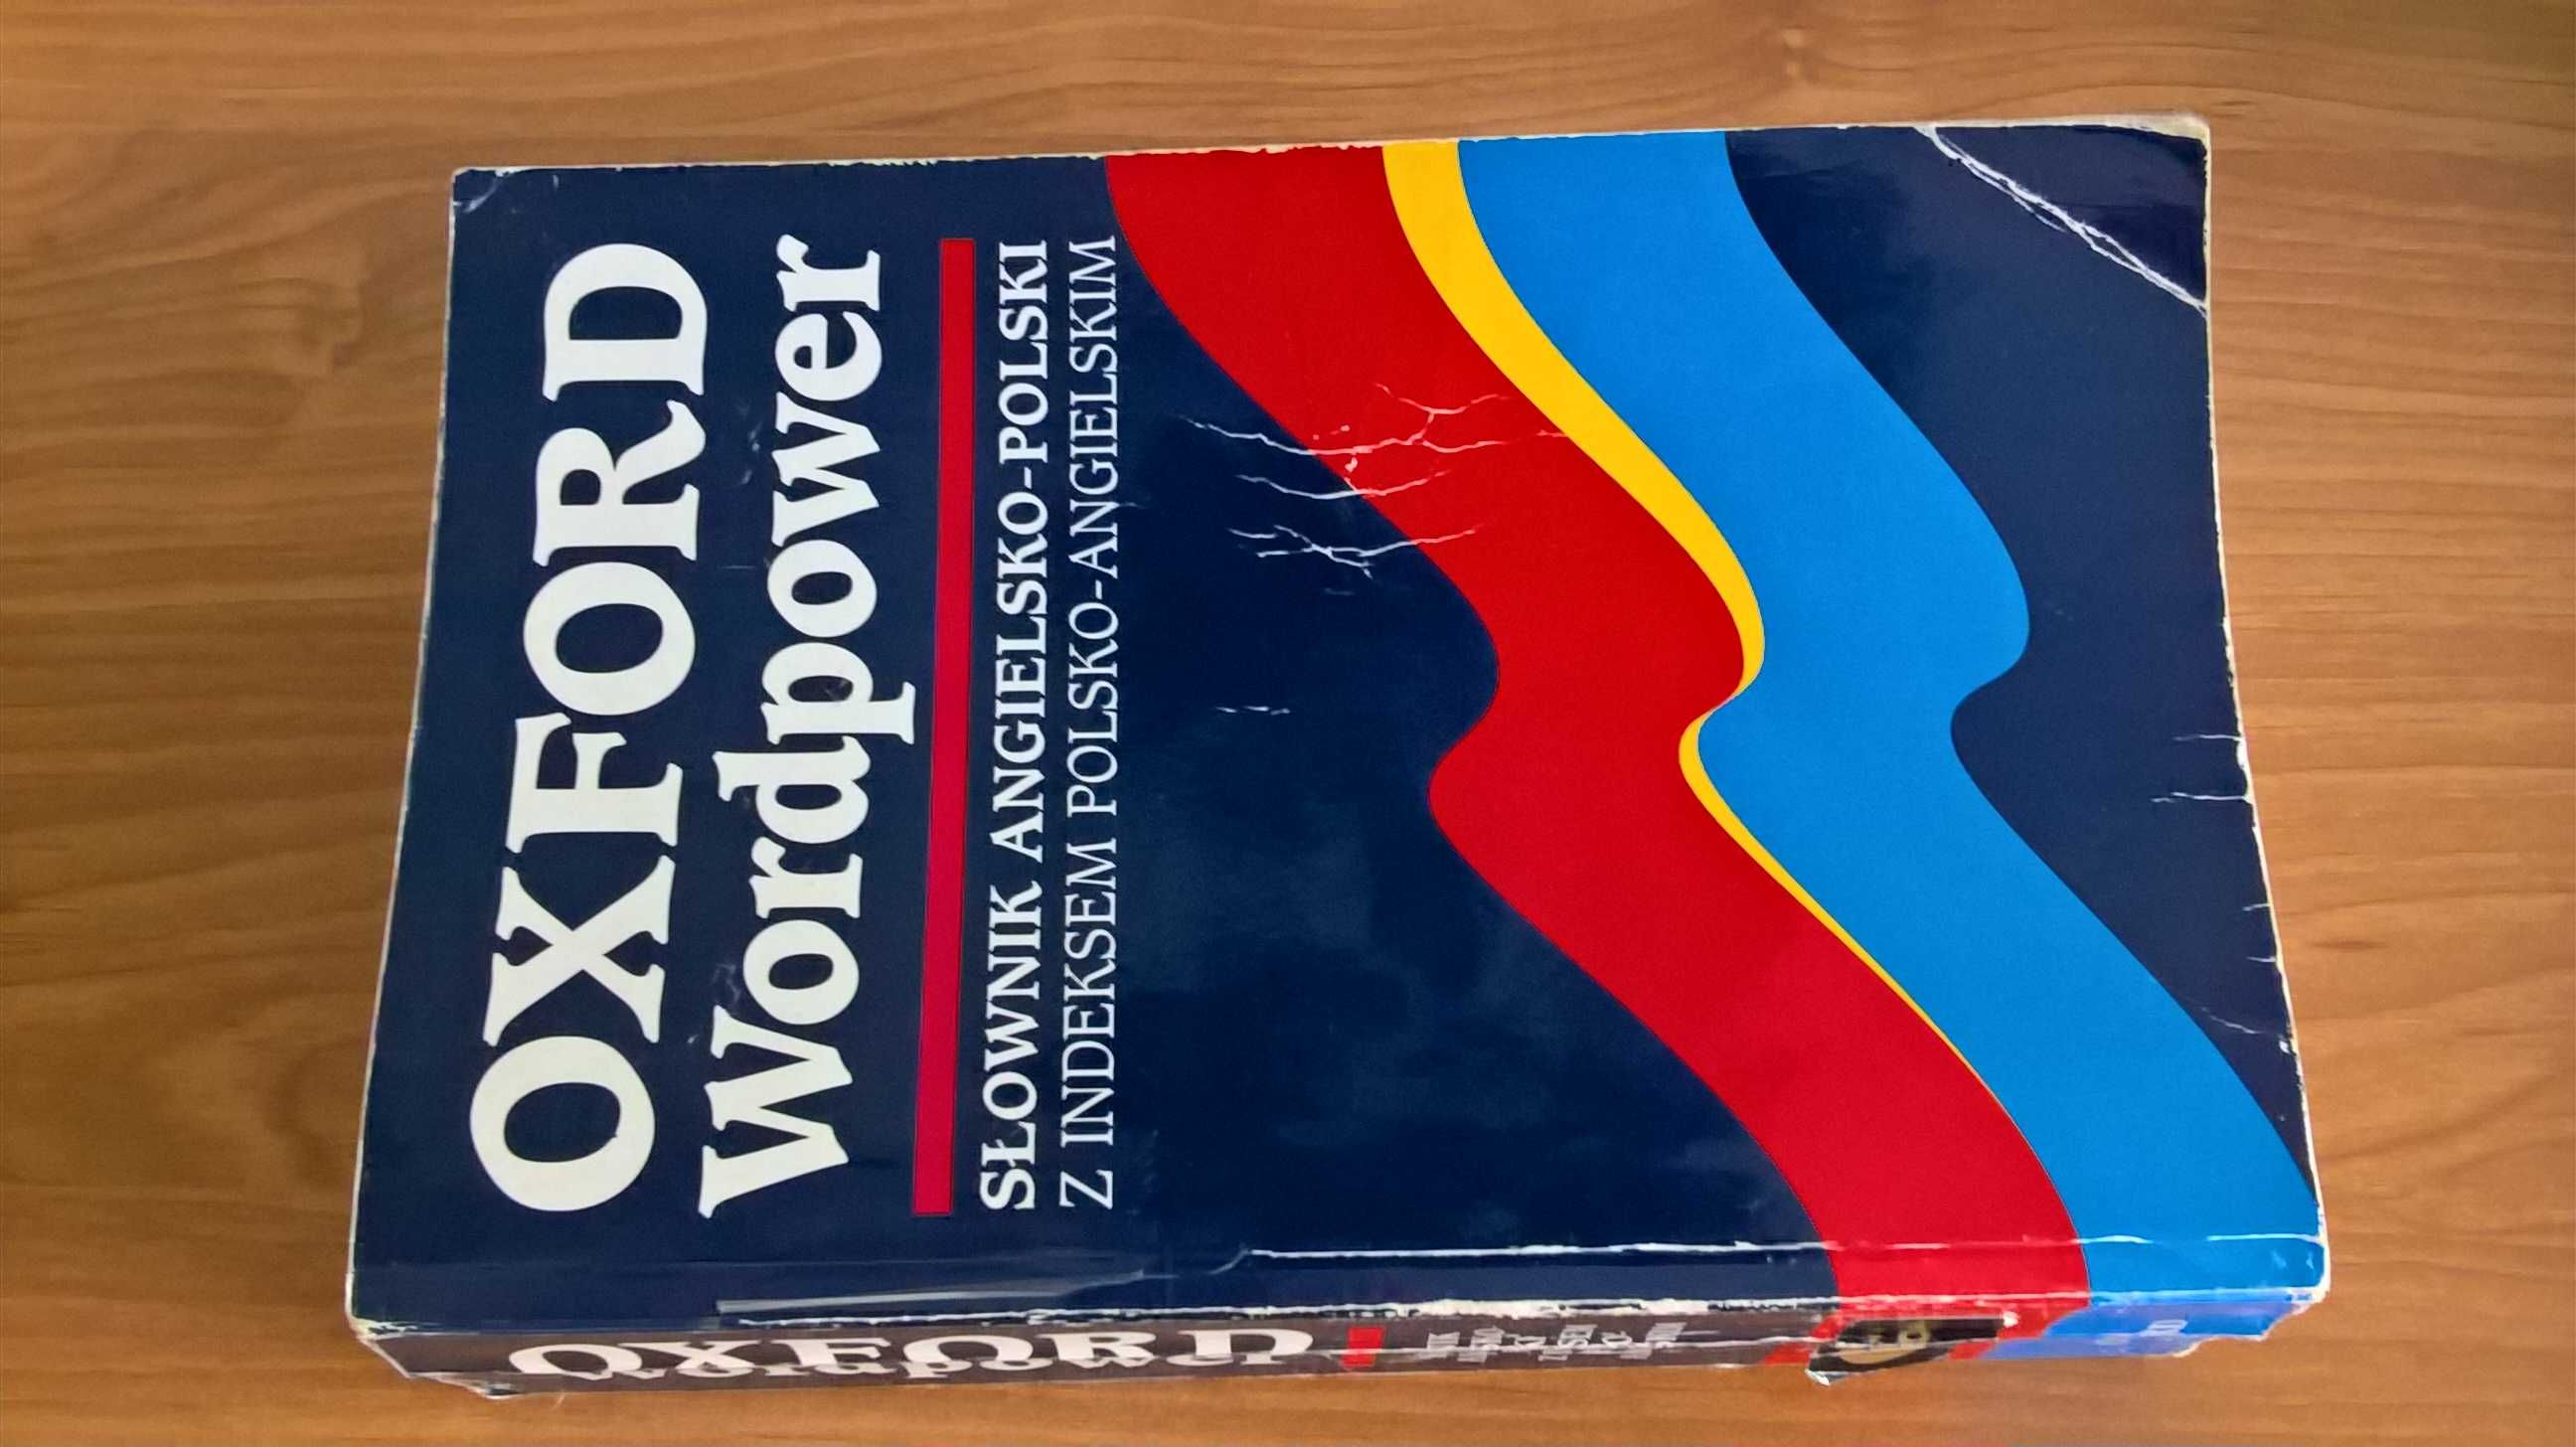 Oxford Wordpwer. Słownik angielsko-polski z indeksem polsko-angielskim